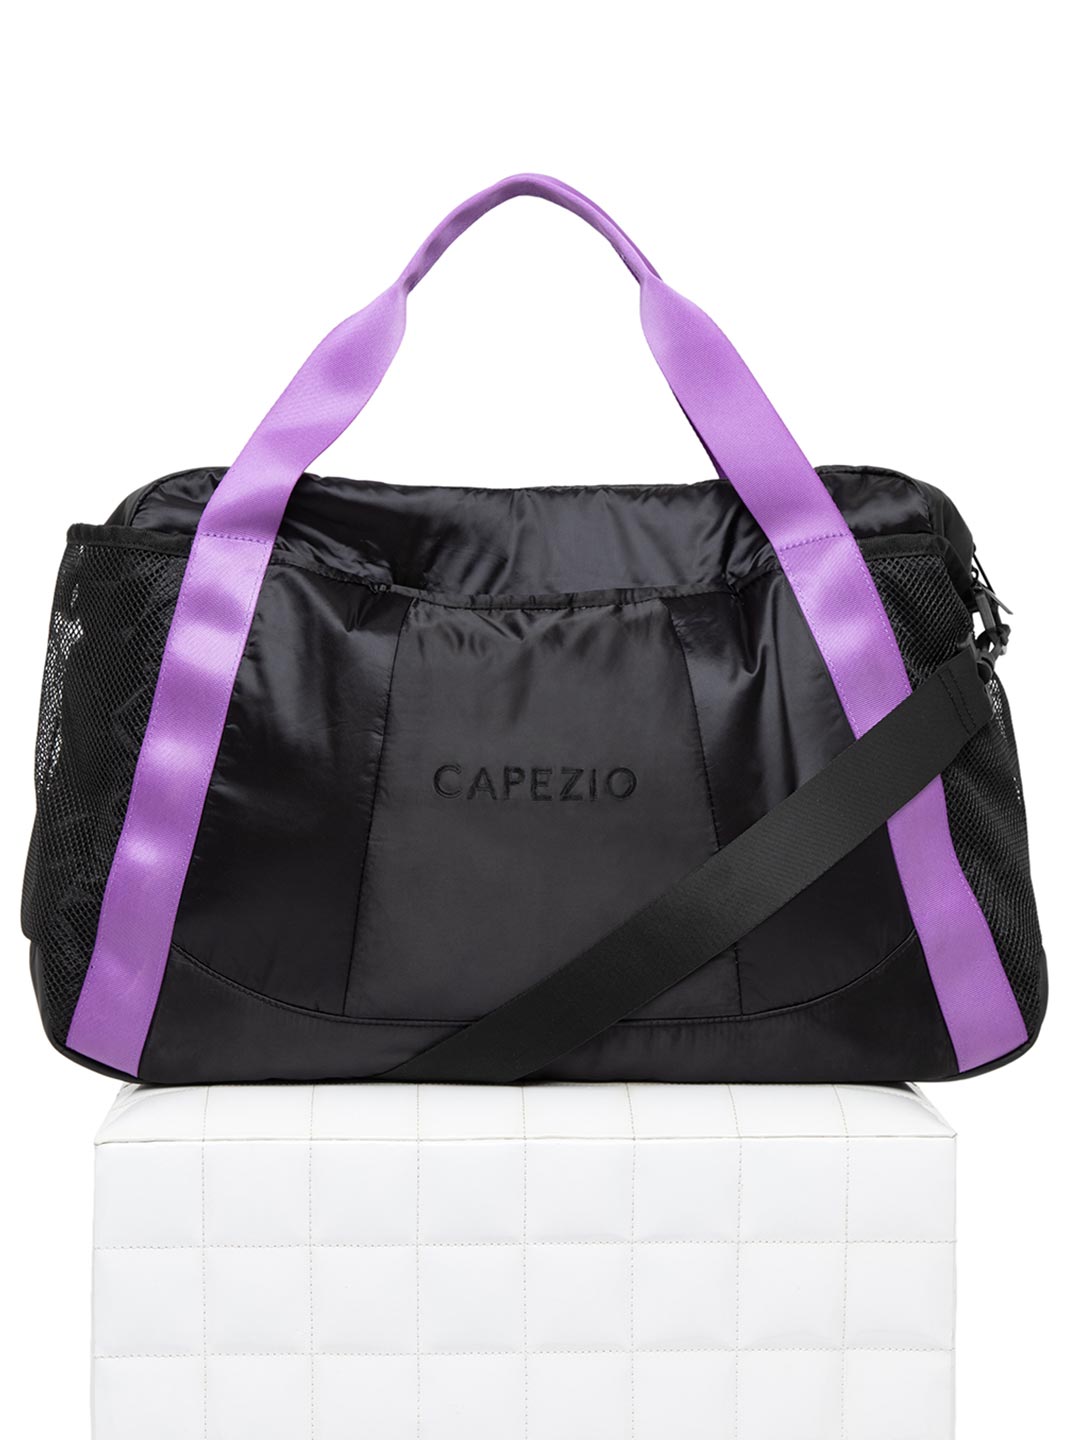 Capezio Motivational Duffle Bag